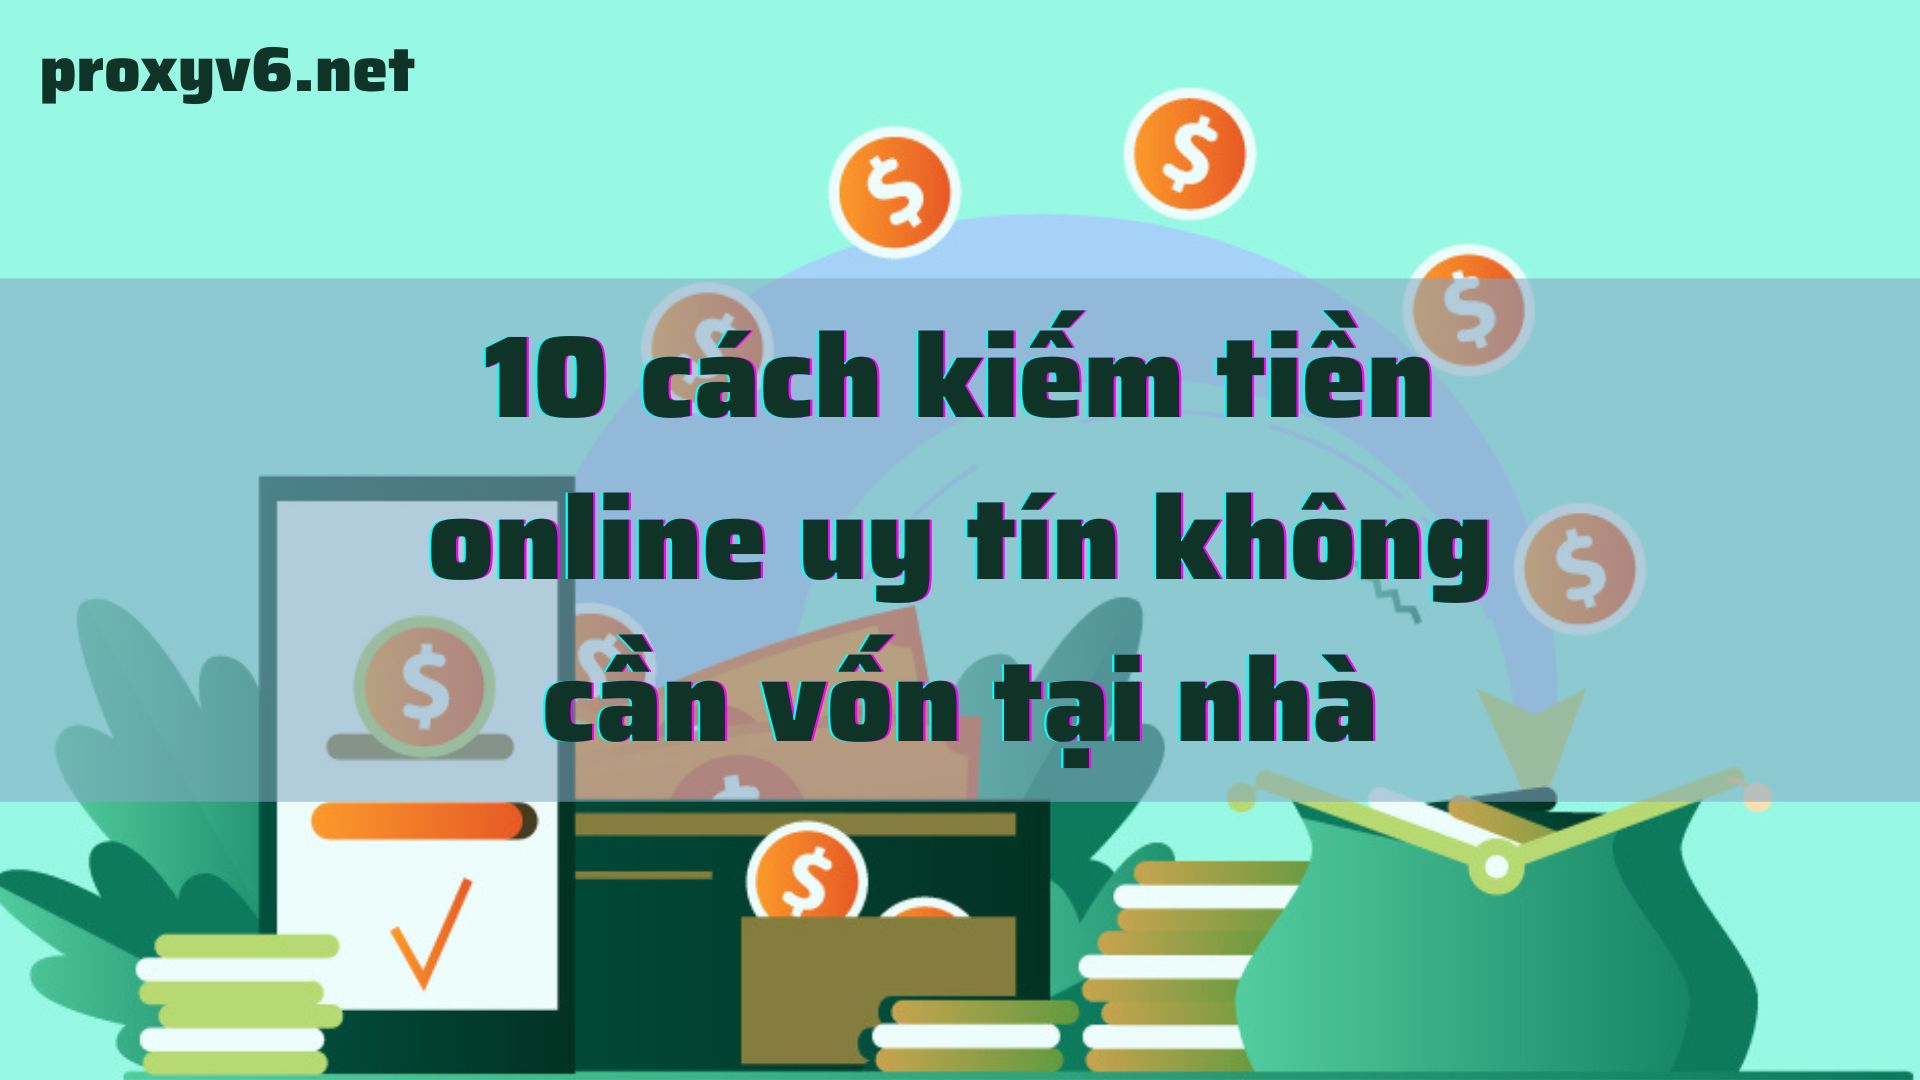 10 cách kiếm tiền online uy tín không cần vốn tại nhà